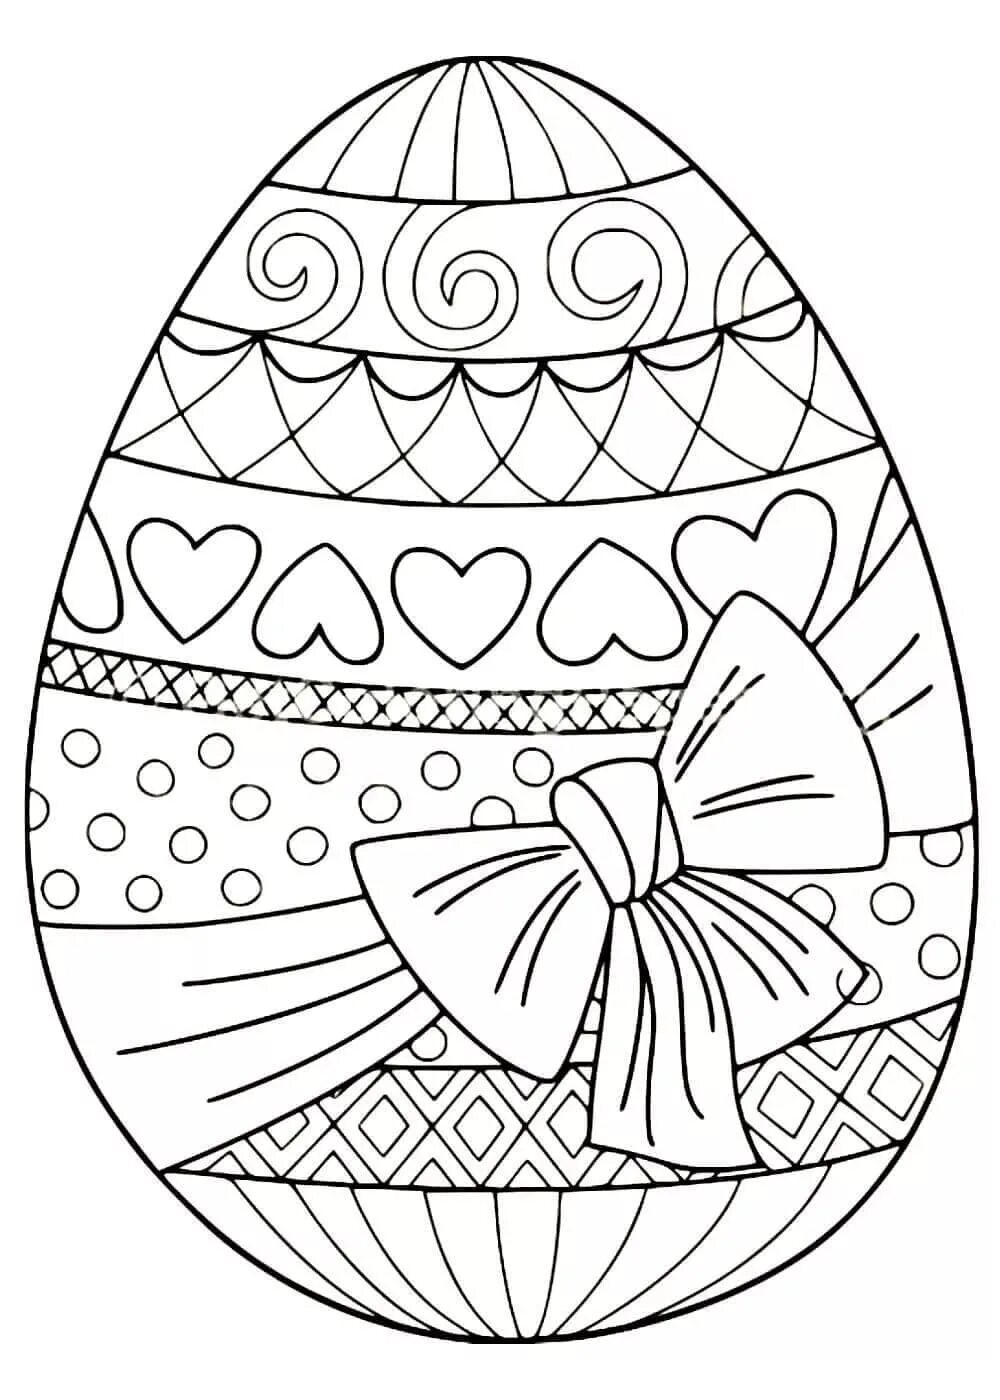 Распечатать раскраску яйца. Пасхальное яйцо раскраска. Раскраски пасхальные для детей. Пасхальное яйцо раскраска для детей. Пасхальные яйца для раскрашивания.